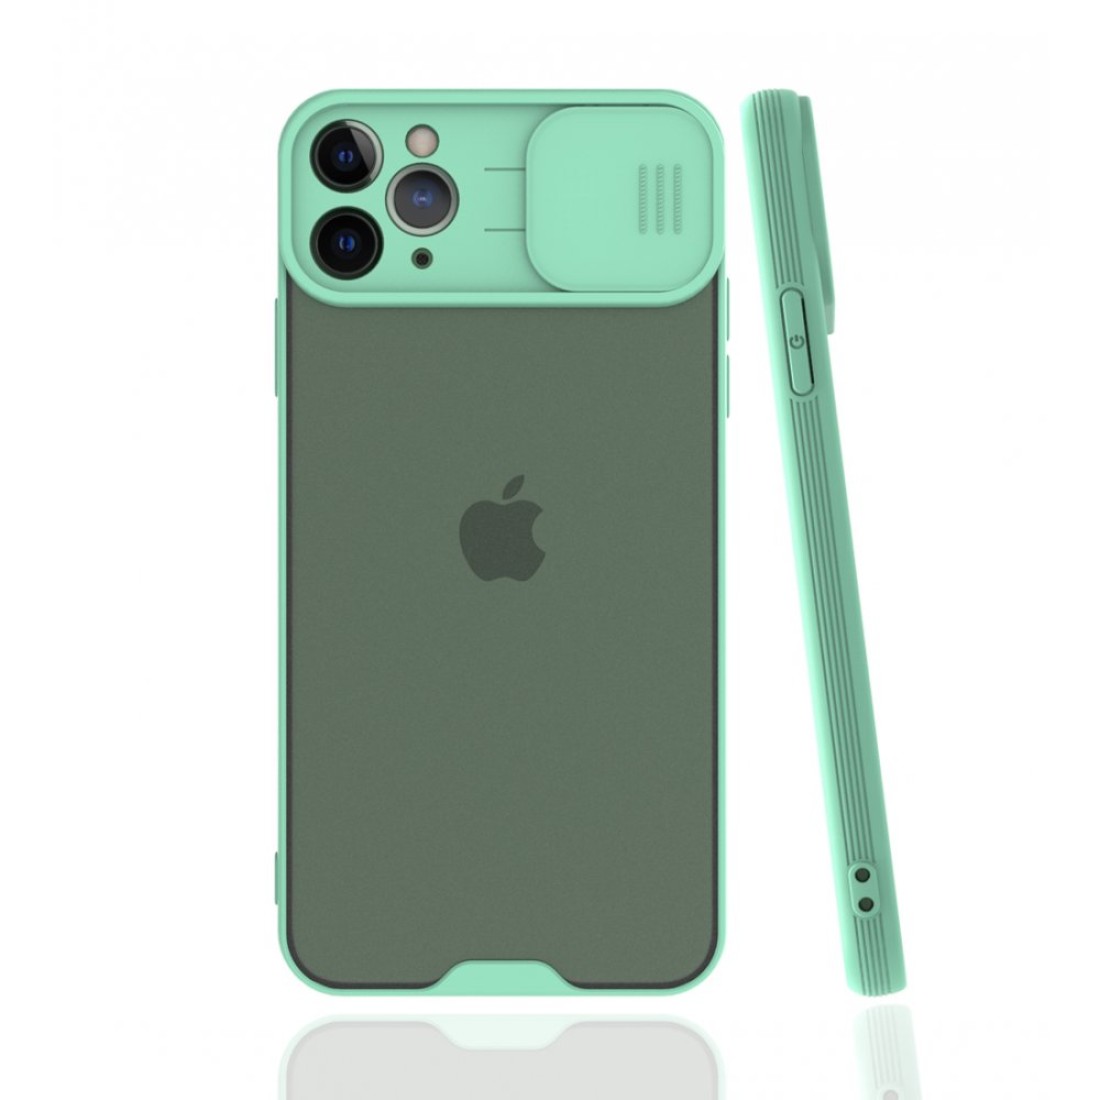 Apple iPhone 11 Pro Max Kılıf Platin Kamera Koruma Silikon - Açık Yeşil